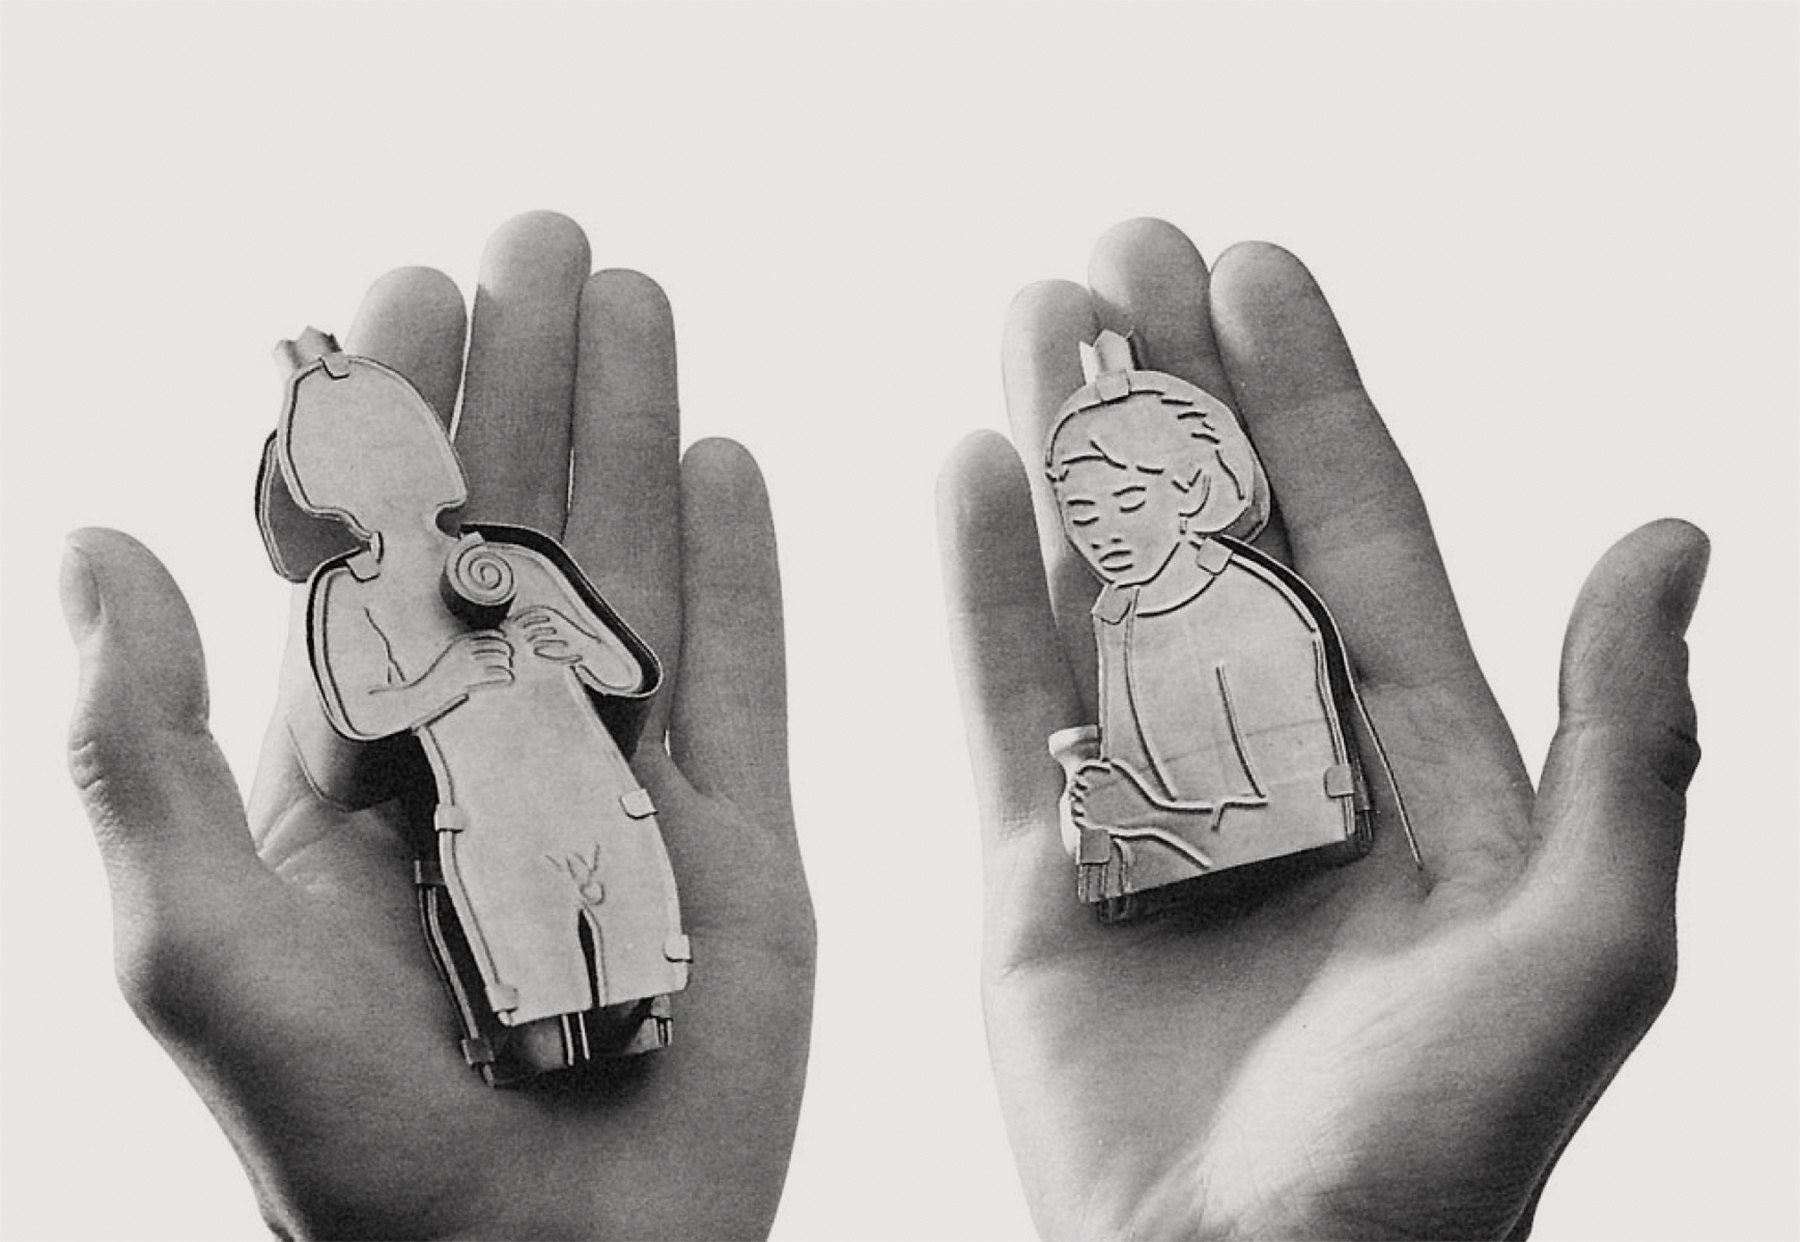 צילום בשחור לבן, ידיים מחזיקות דמויות מאוירות, אסתר קנובל וורד